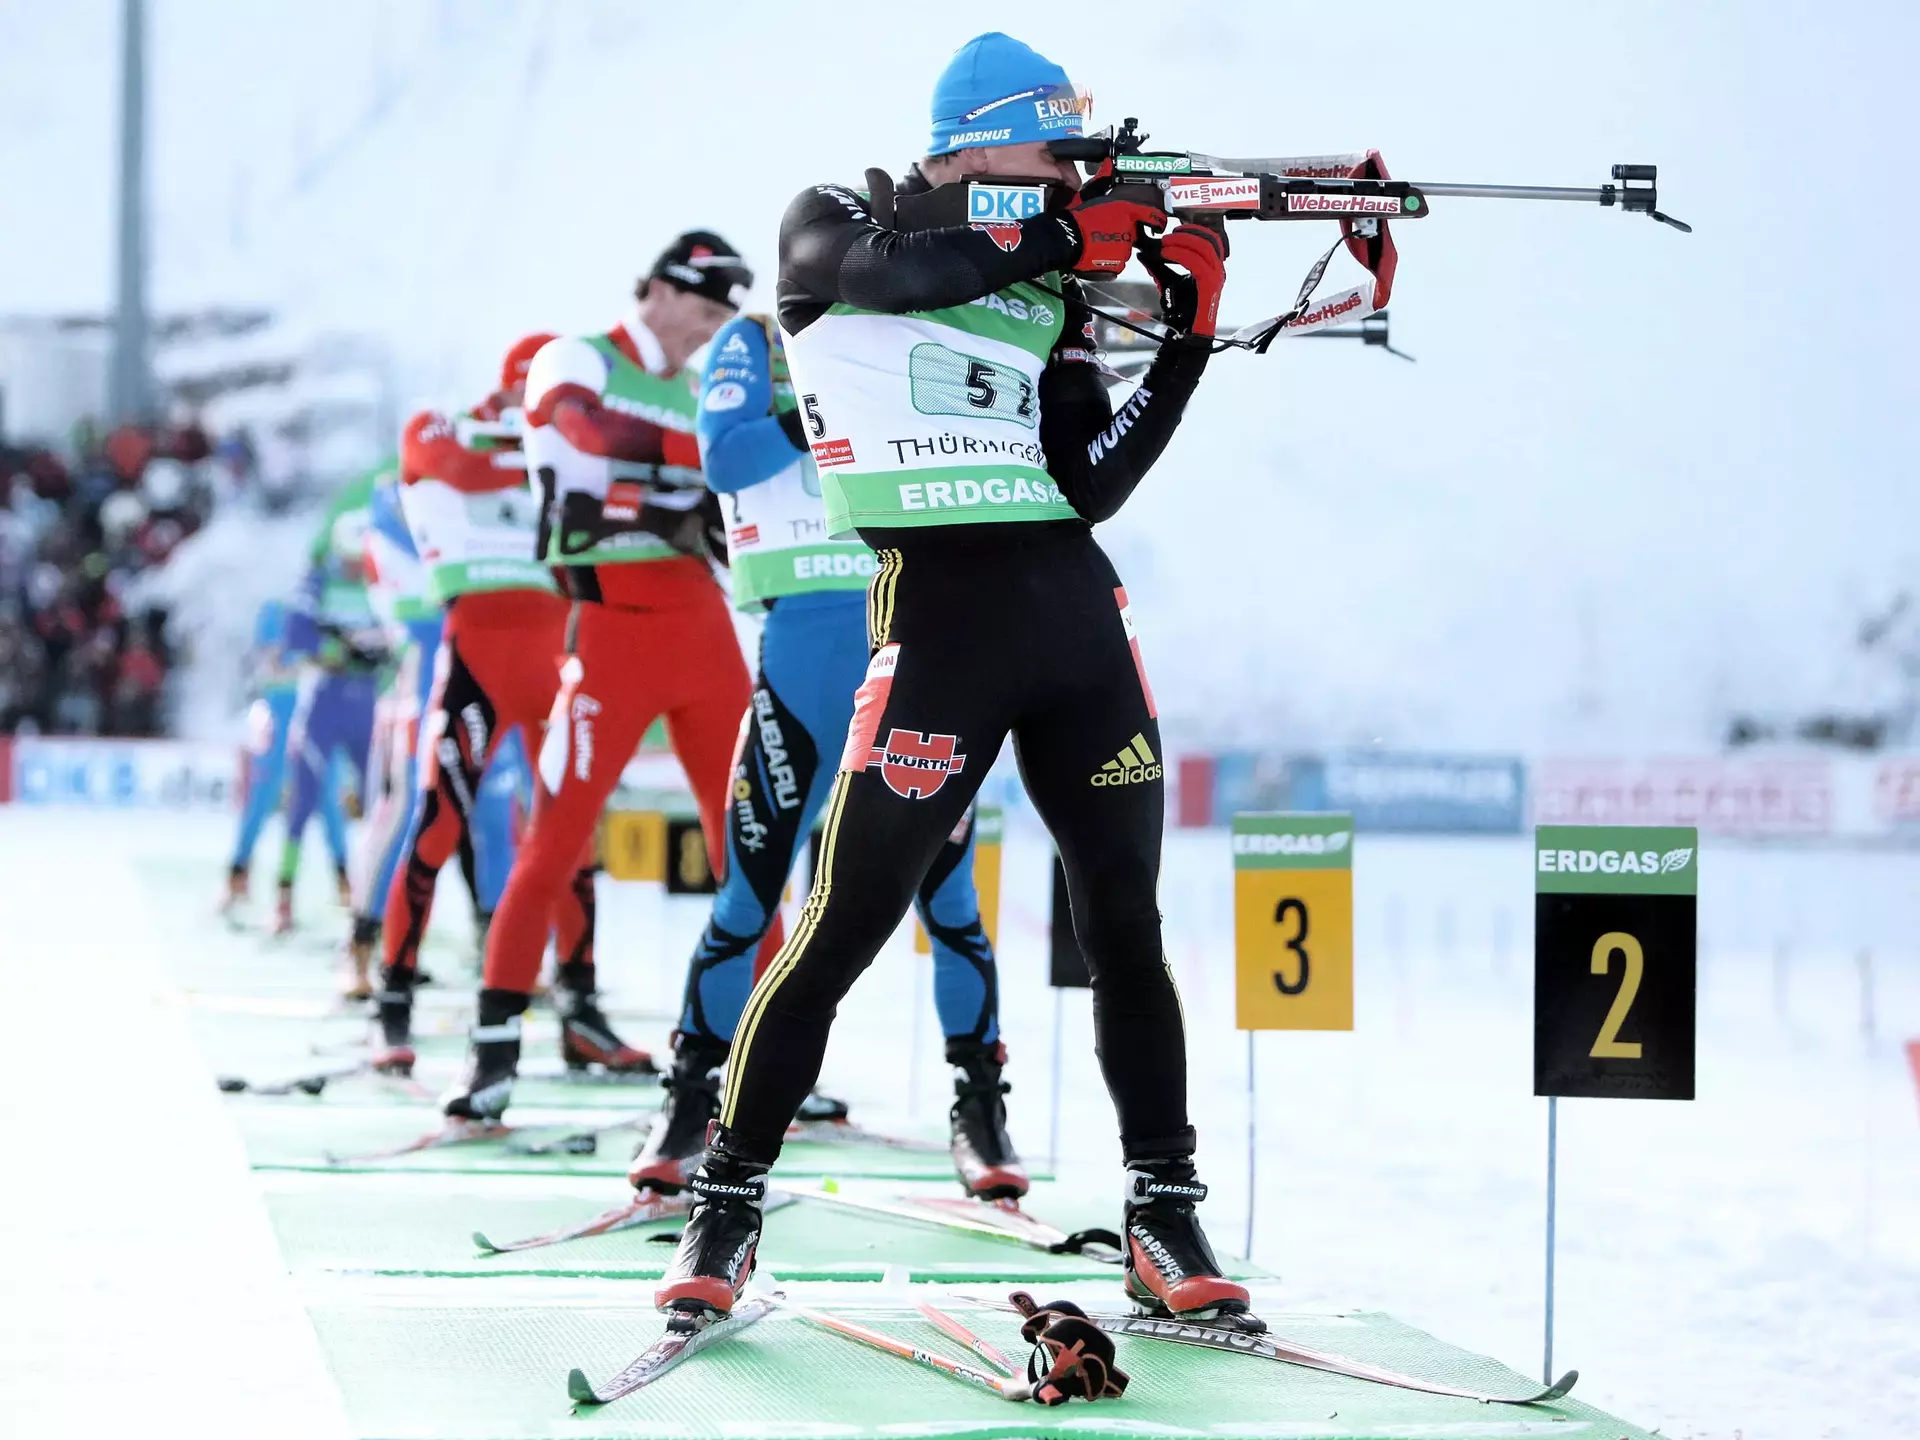 Jedes Jahr im Januar findet der Biathlon-Weltcup in Oberhof im Thüringer Wald statt.